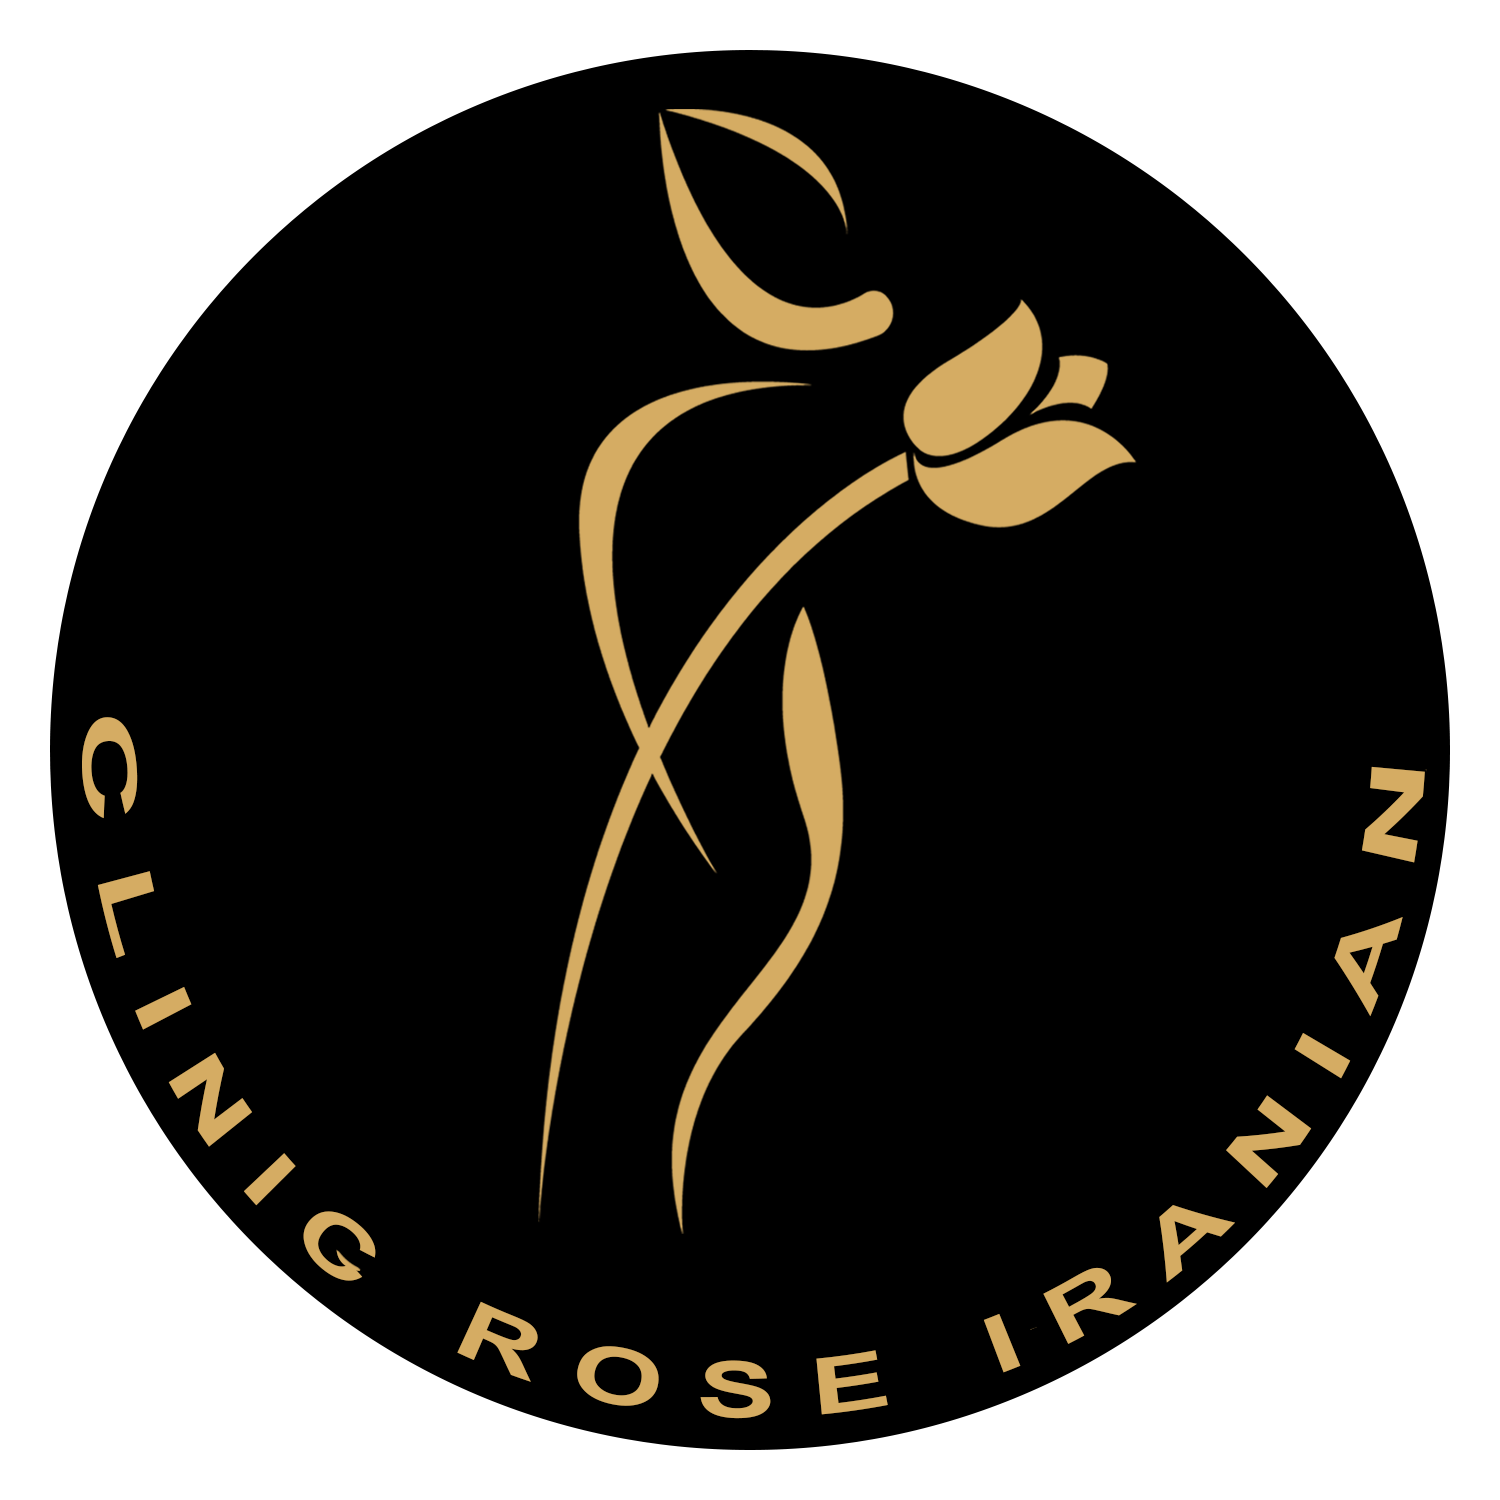 کلینیک تخصصی رز ایرانیان | کلینیک زیبایی، پوست، مو، لاغری و لیزر